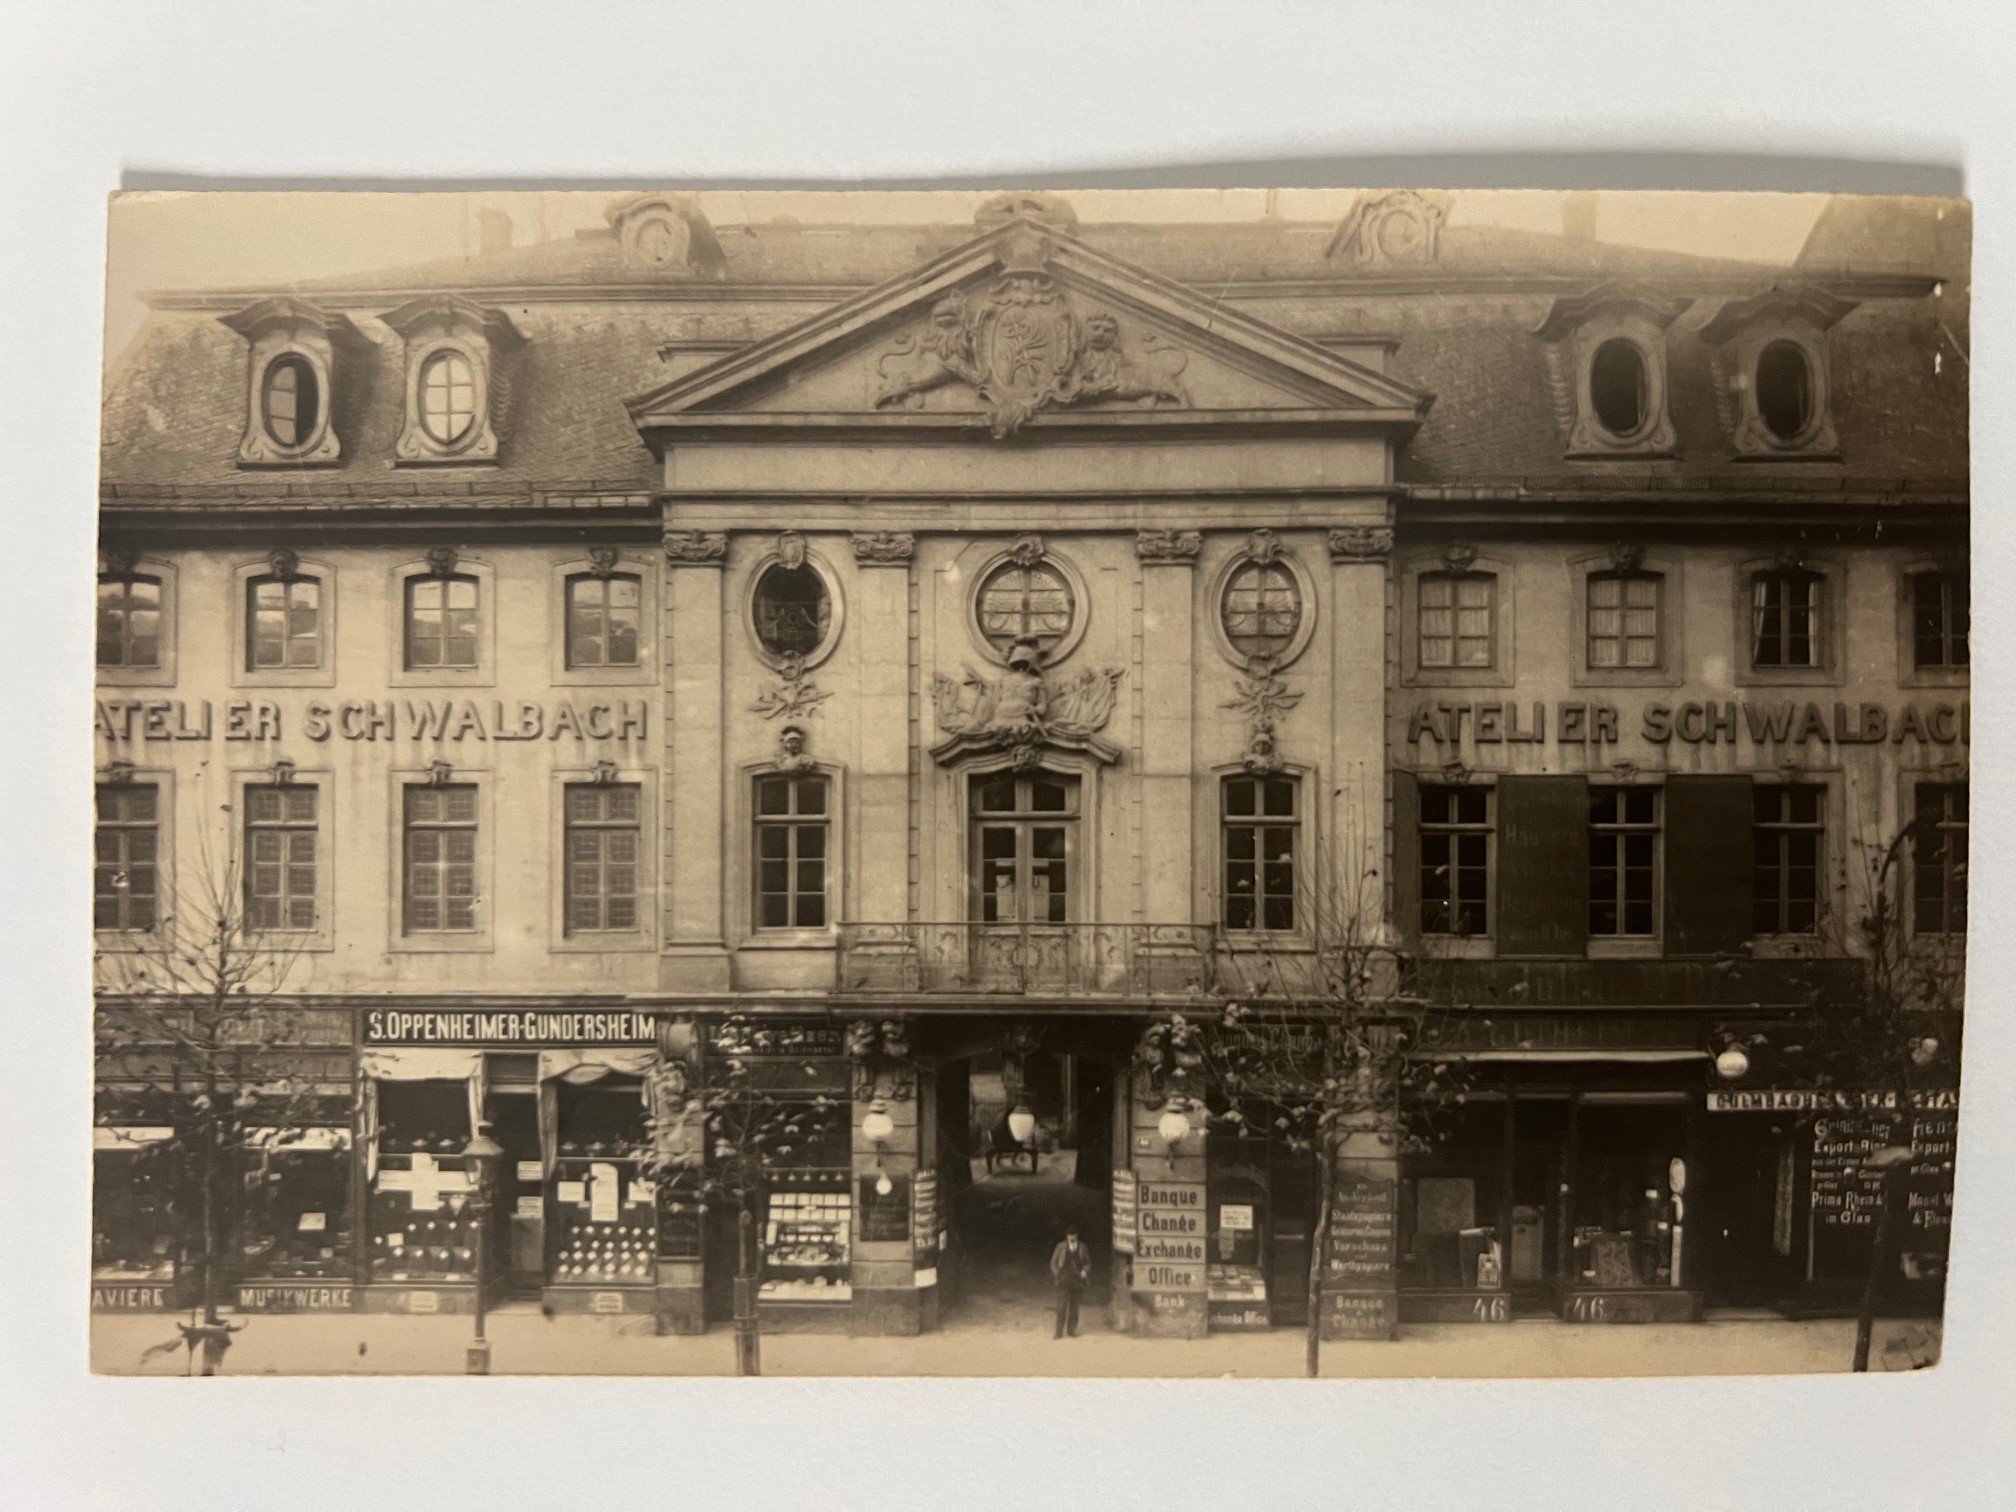 Gottfried Vömel, Frankfurt, Der Hessische Hof, Zeil 46, nach einer alten Platte von 1880, ca. 1905. (Taunus-Rhein-Main - Regionalgeschichtliche Sammlung Dr. Stefan Naas CC BY-NC-SA)